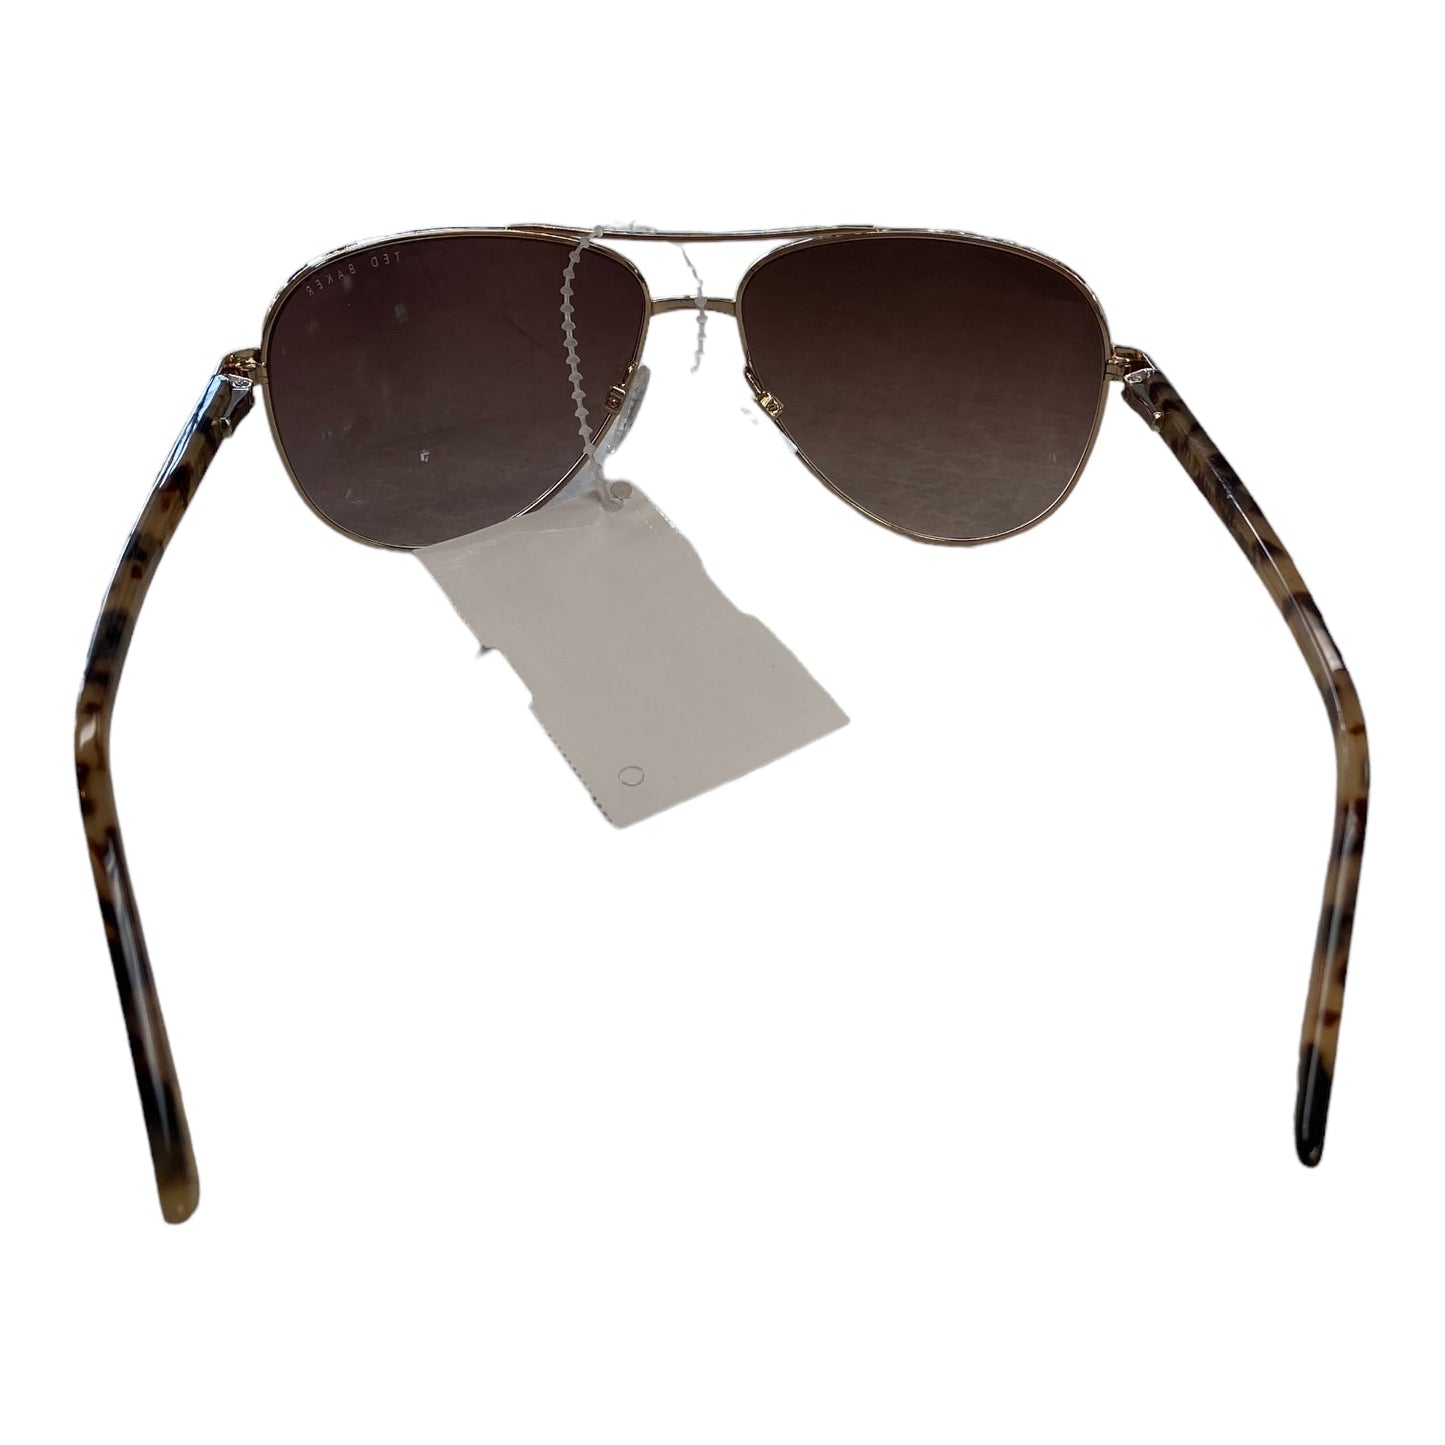 Sunglasses Designer Ted Baker